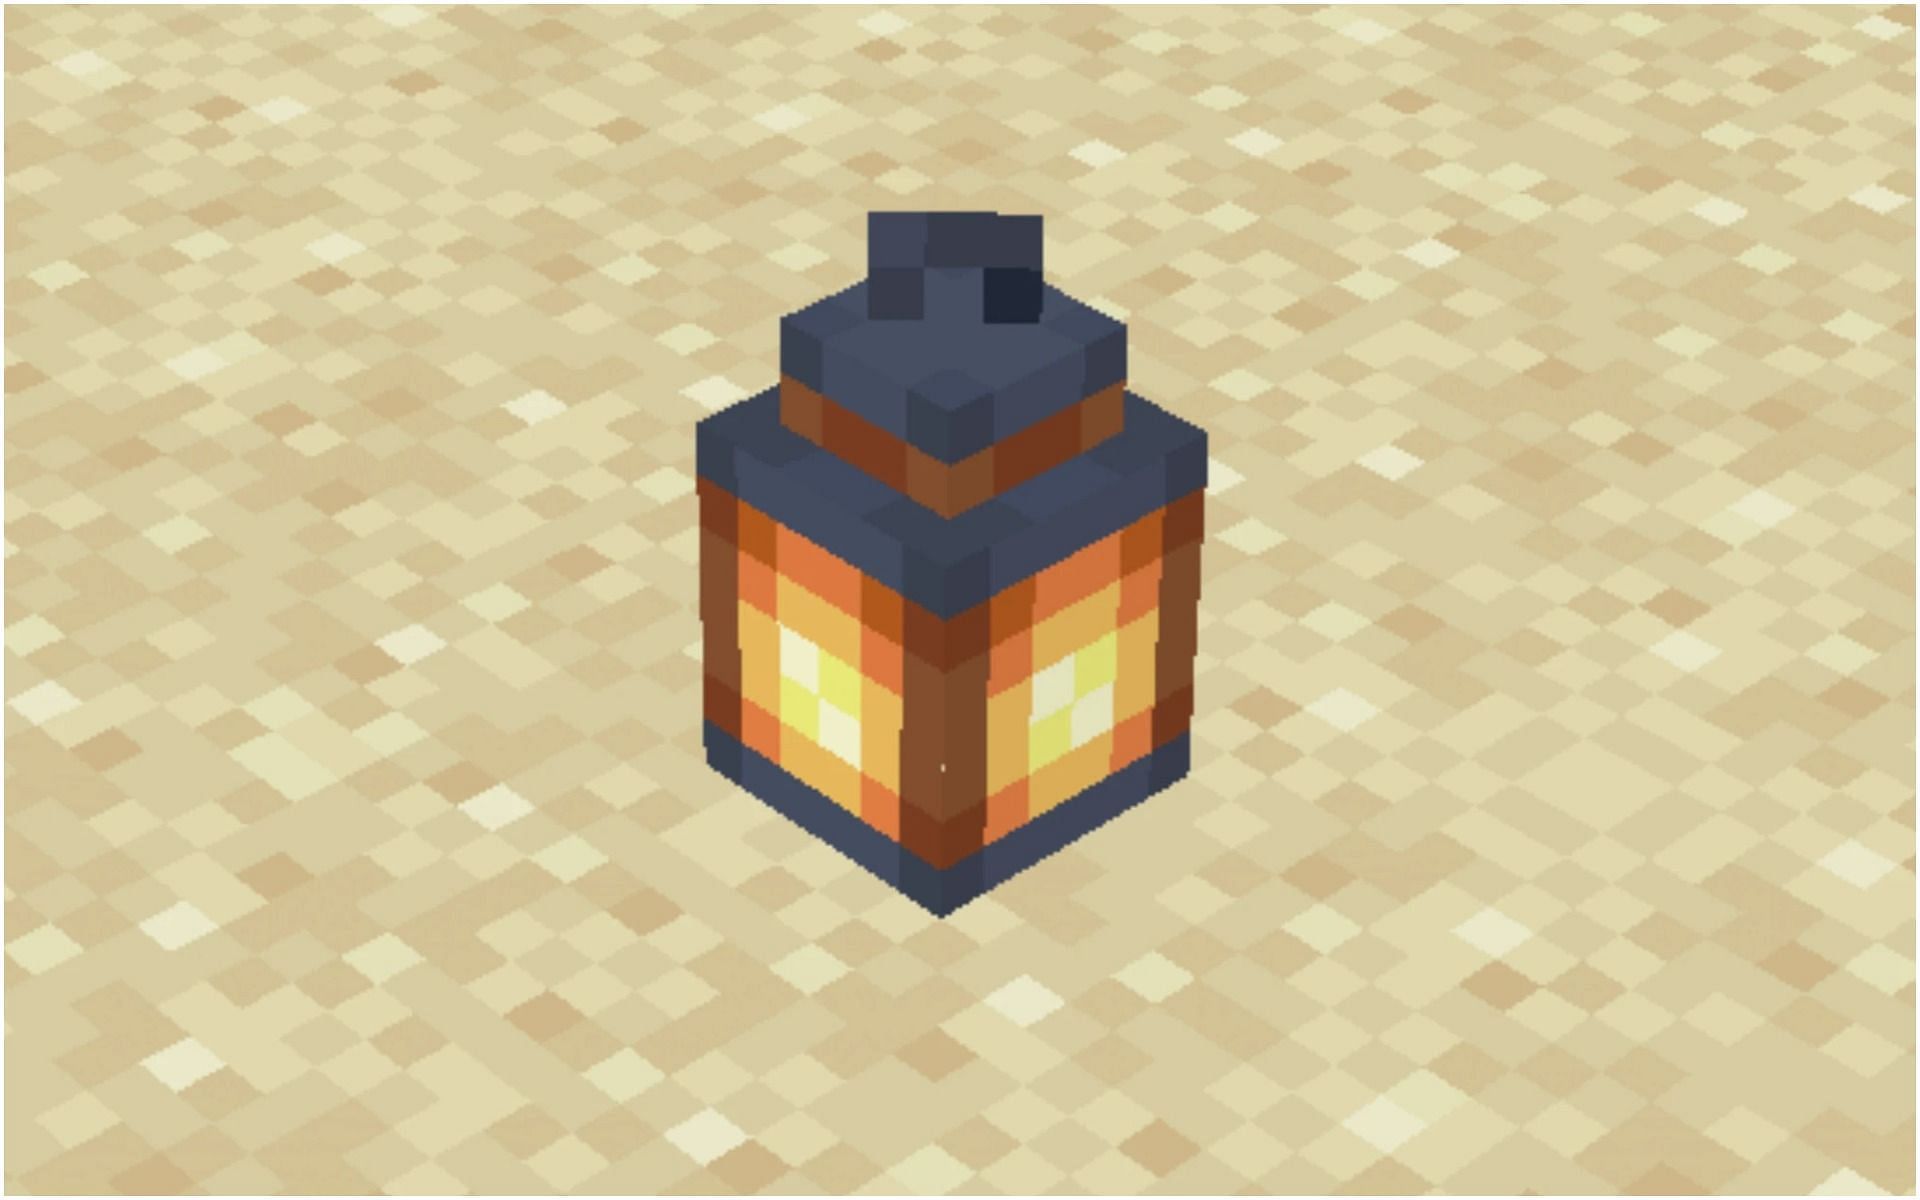 A lantern in Minecraft (Image via Minecraft)